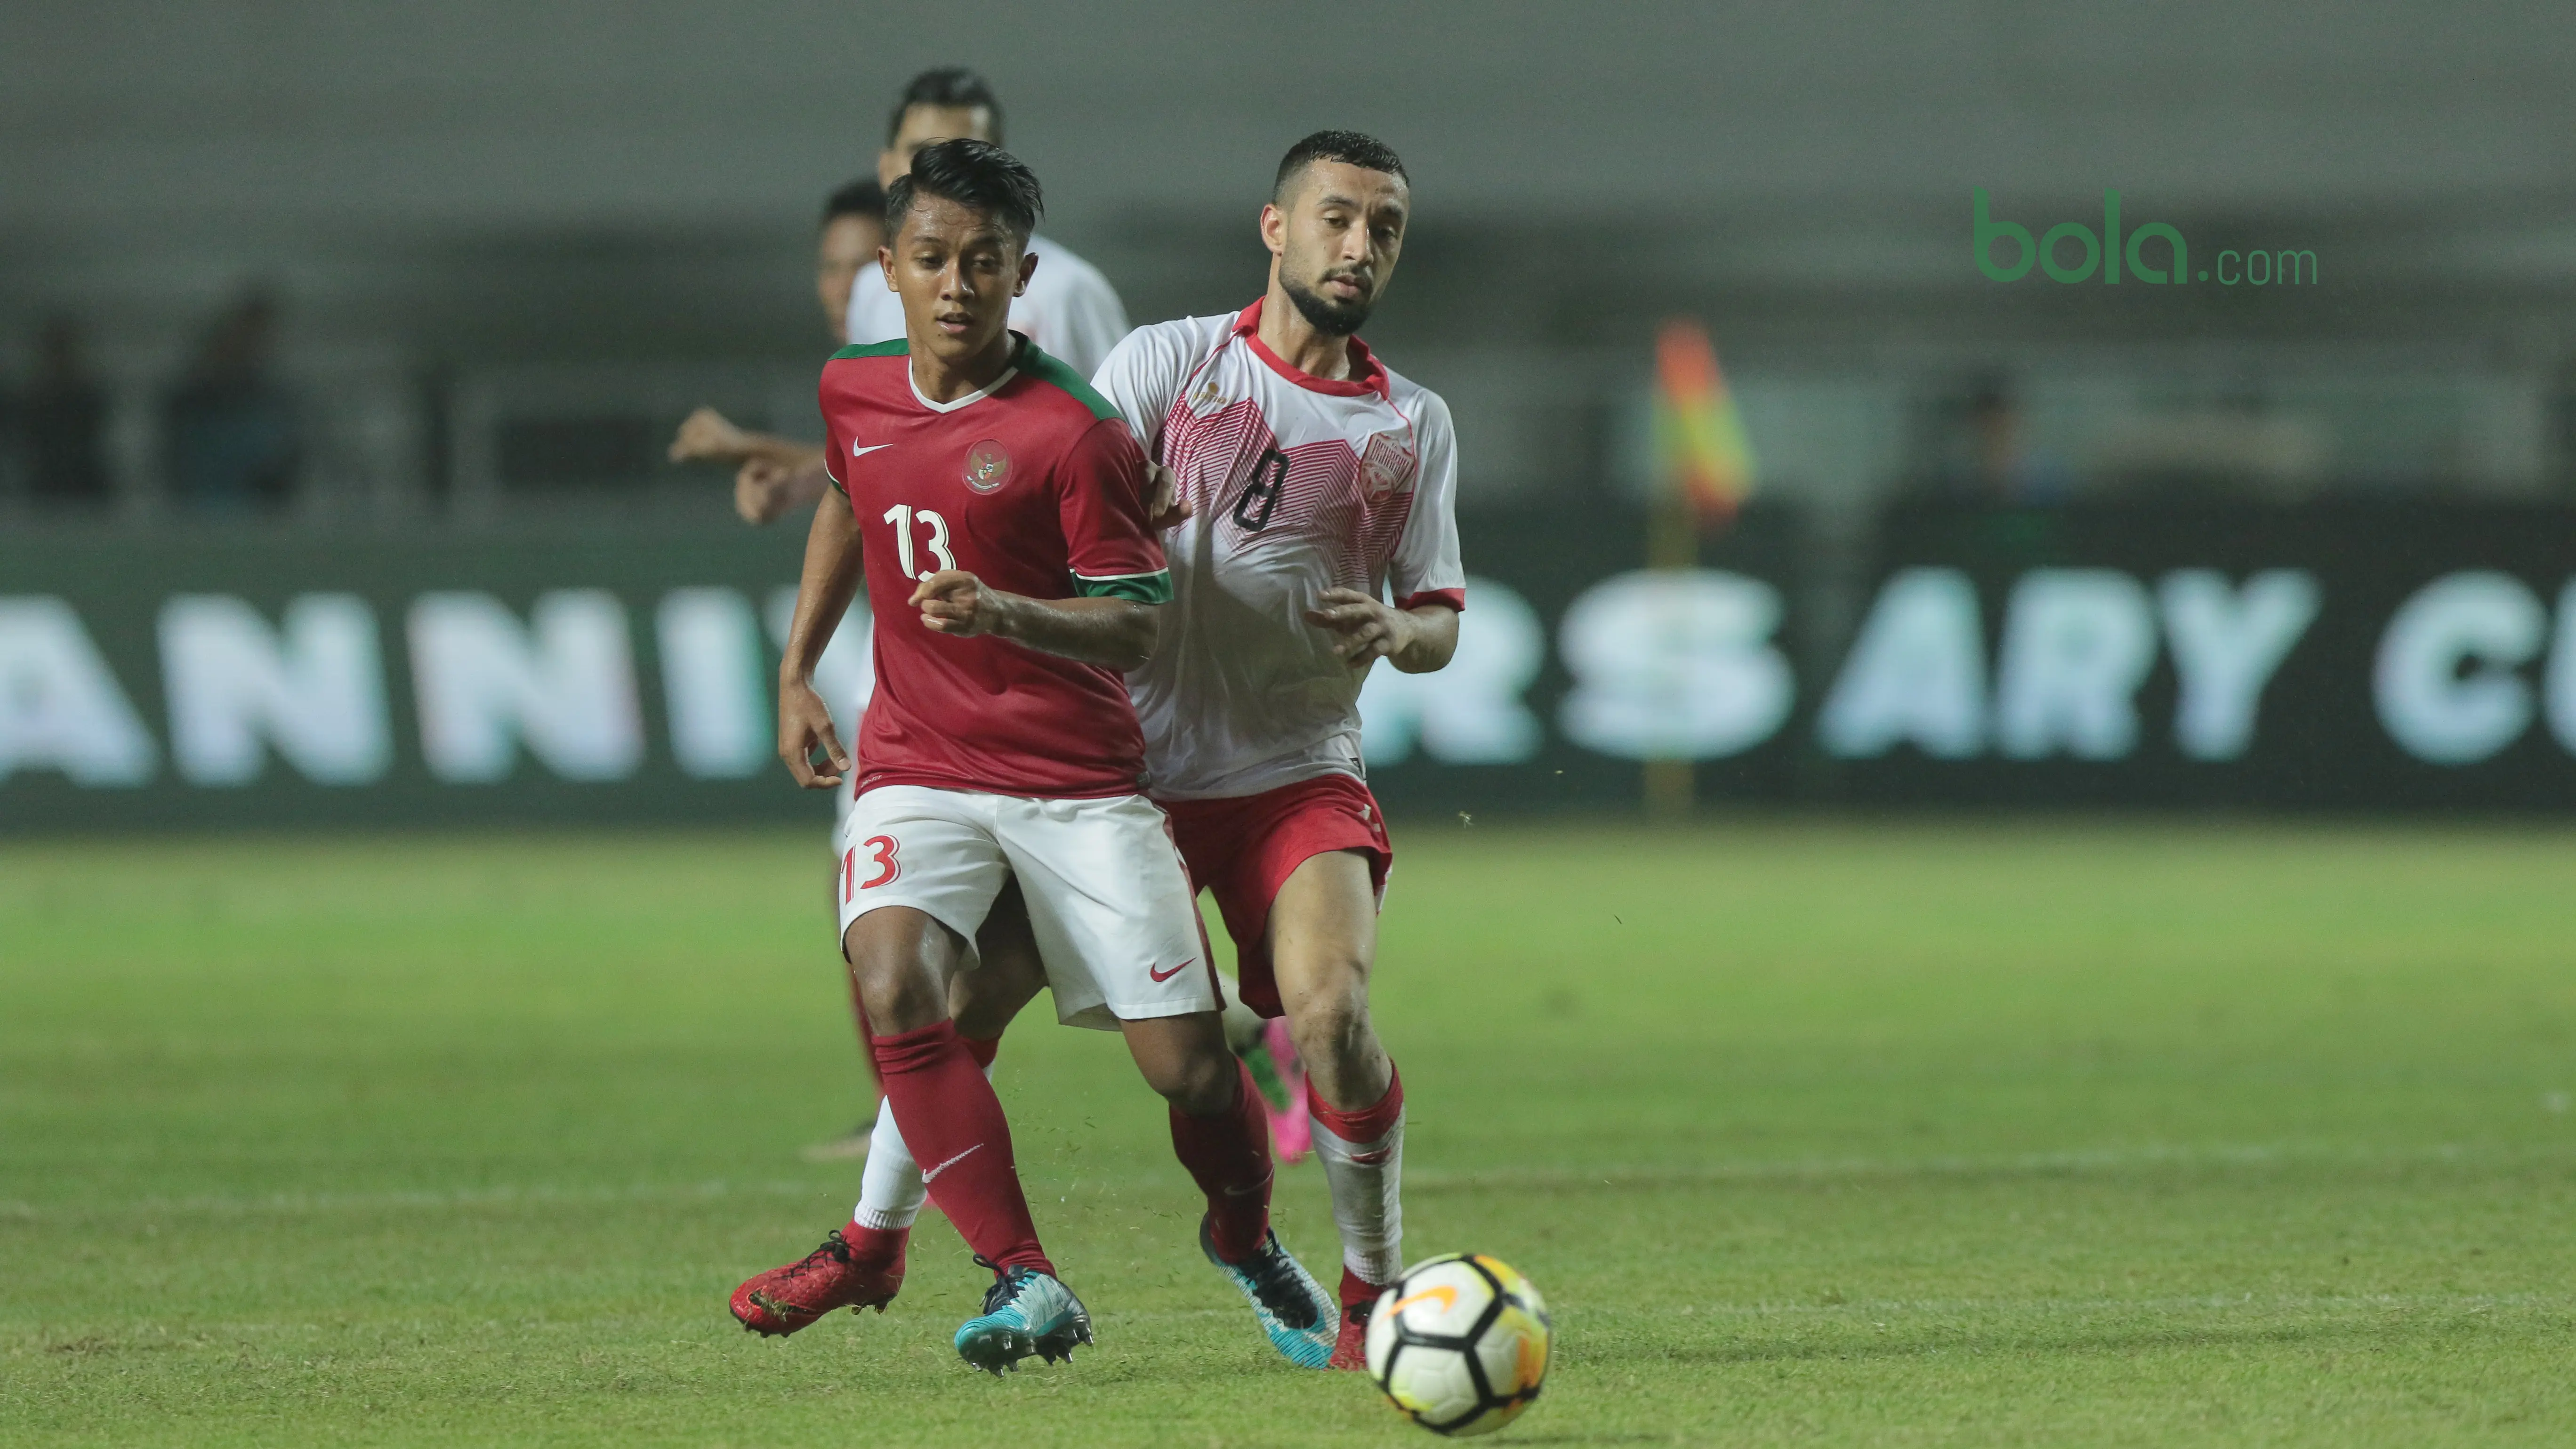 Pemain Timnas Indonesia U-23, Febri Haryadi saat melawan Bahrain pada laga PSSI Anniversary Cu 2018 di Stadion Pakansari, Bogor, (26/4/2018). Bahrain menang 1-0. (Bola.com/Nick Hanoatubun)